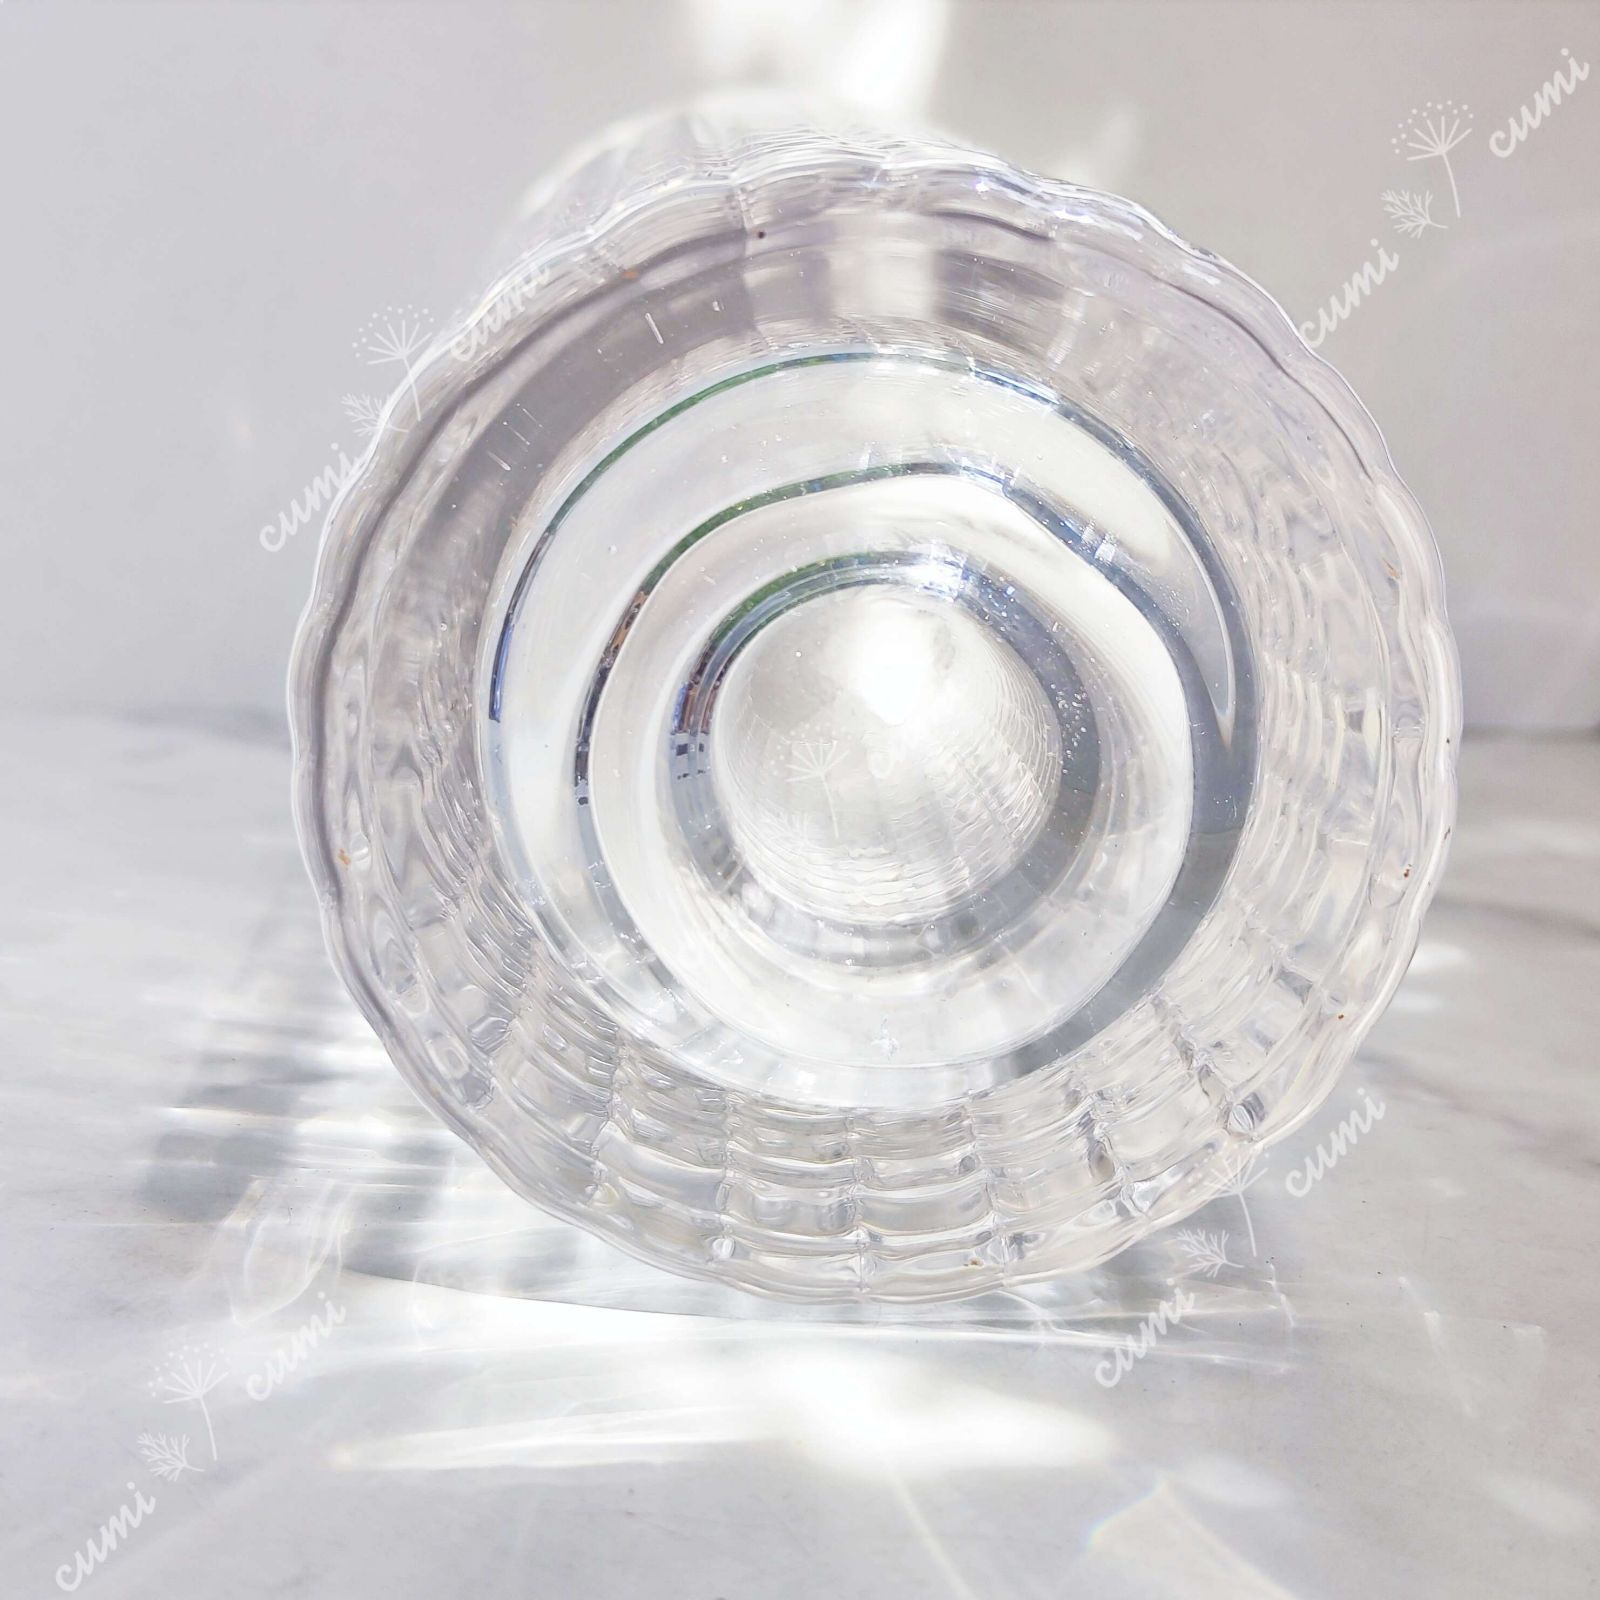 高品質 北欧 ガラス 花瓶 フラワーベース クリスタル インテリア おしゃれ 透明 クリア キラキラ 限定 一輪挿し 高級 おしゃれ 室内 激安 レア  プレゼント 海外 おすすめ 人気 デザイン 観葉植物